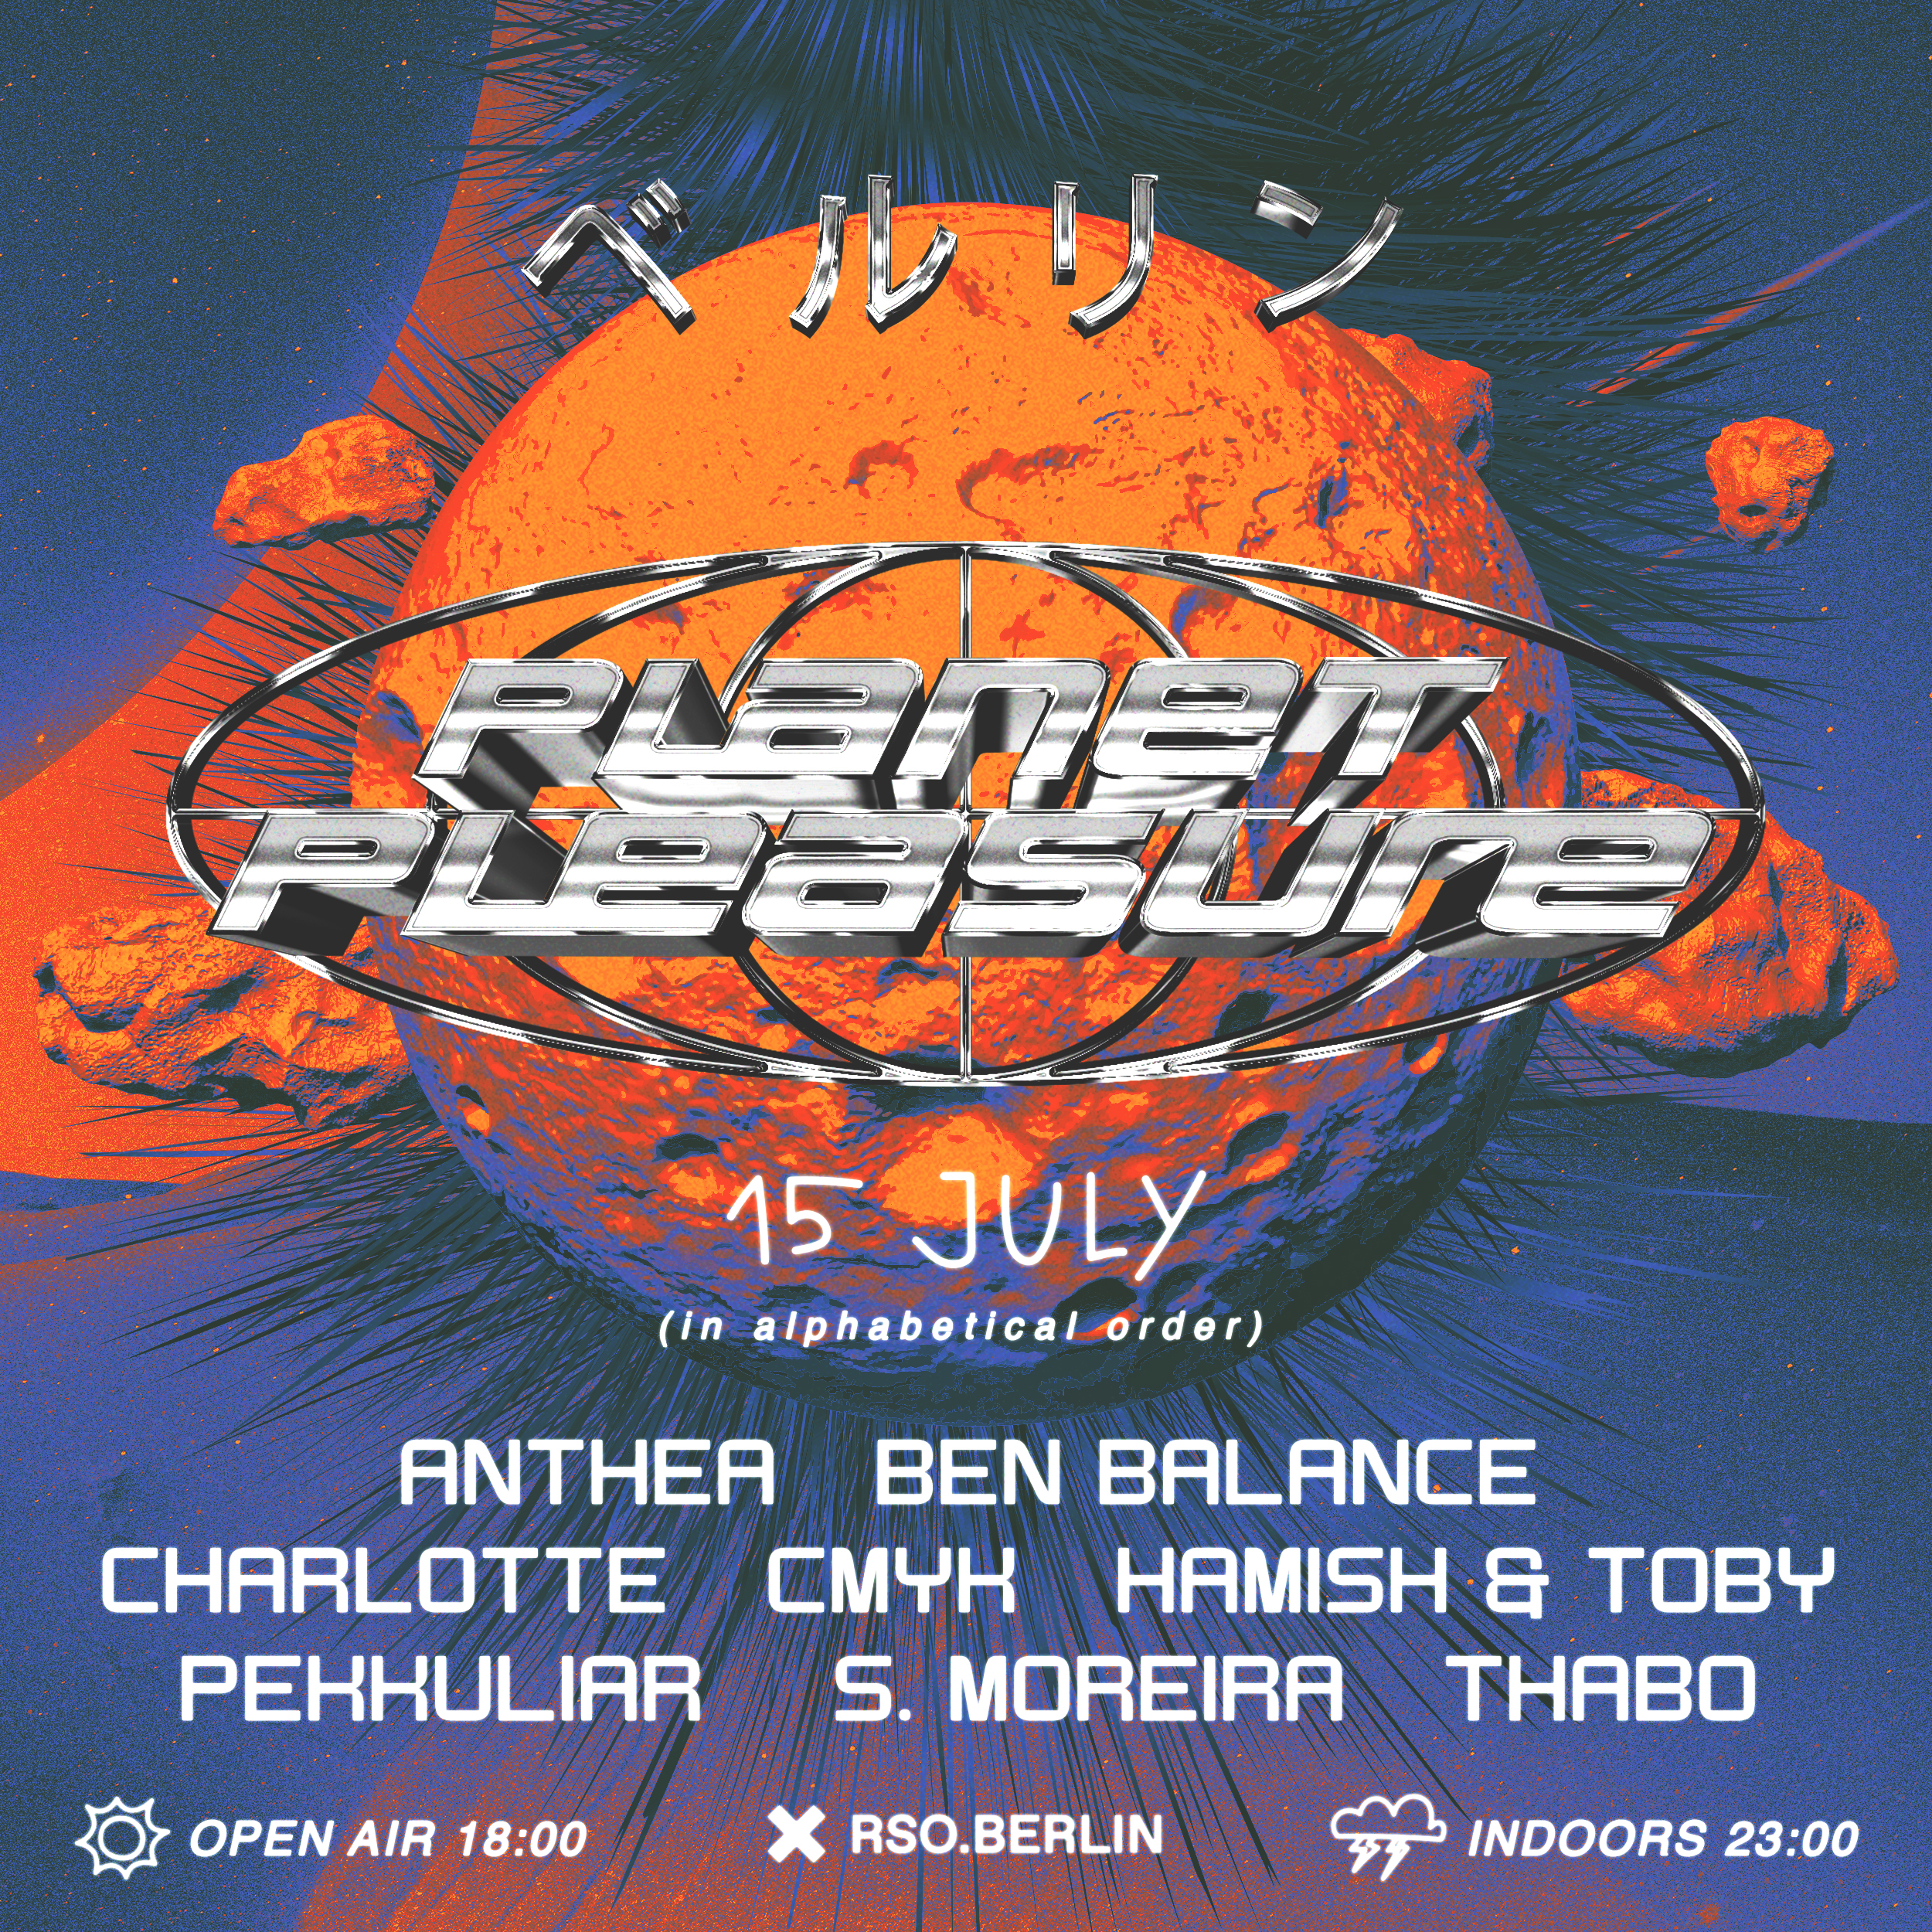 15.07. | Planet Pleasure Open Air & Indoor w/ Hamish & Toby, S. Moreira, Anthea